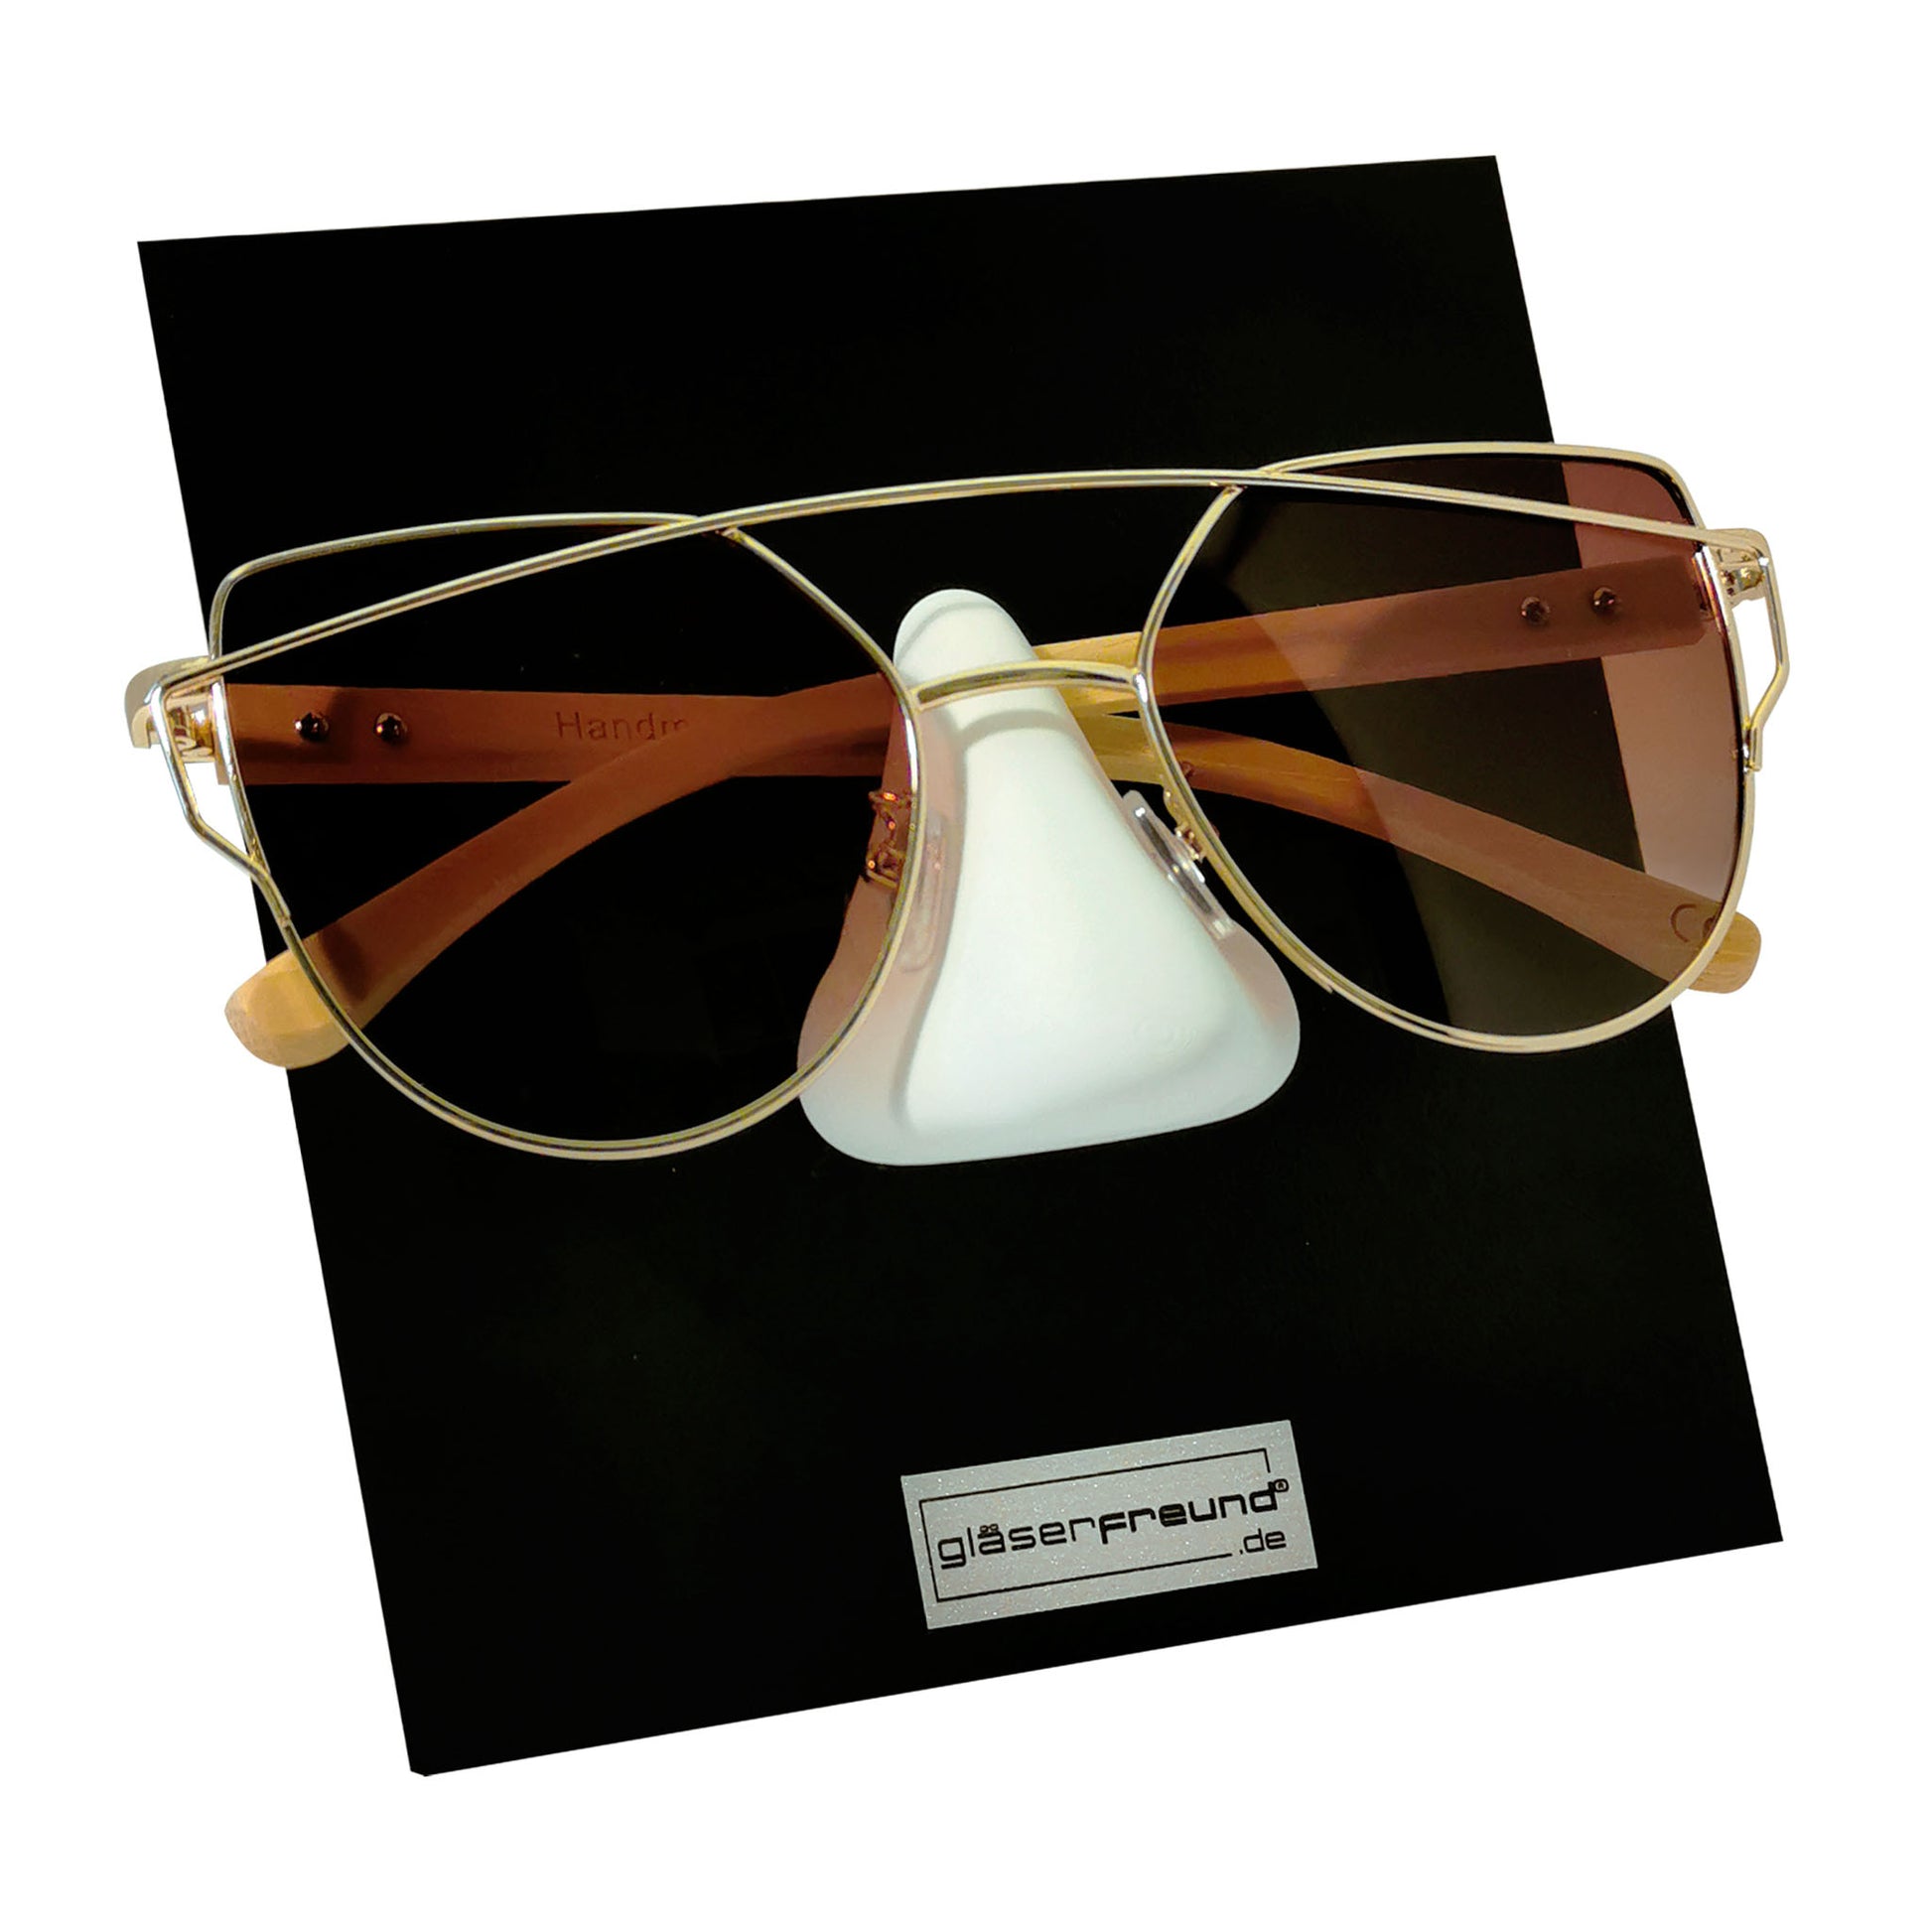 Gläserfreund Kessy-Q Brillenorganizer und Brillenhalter für die Wand -  Brillenaufbewahrung für mehrere Brillen, Brillenregal für mehr Ordnung :  : Küche, Haushalt & Wohnen